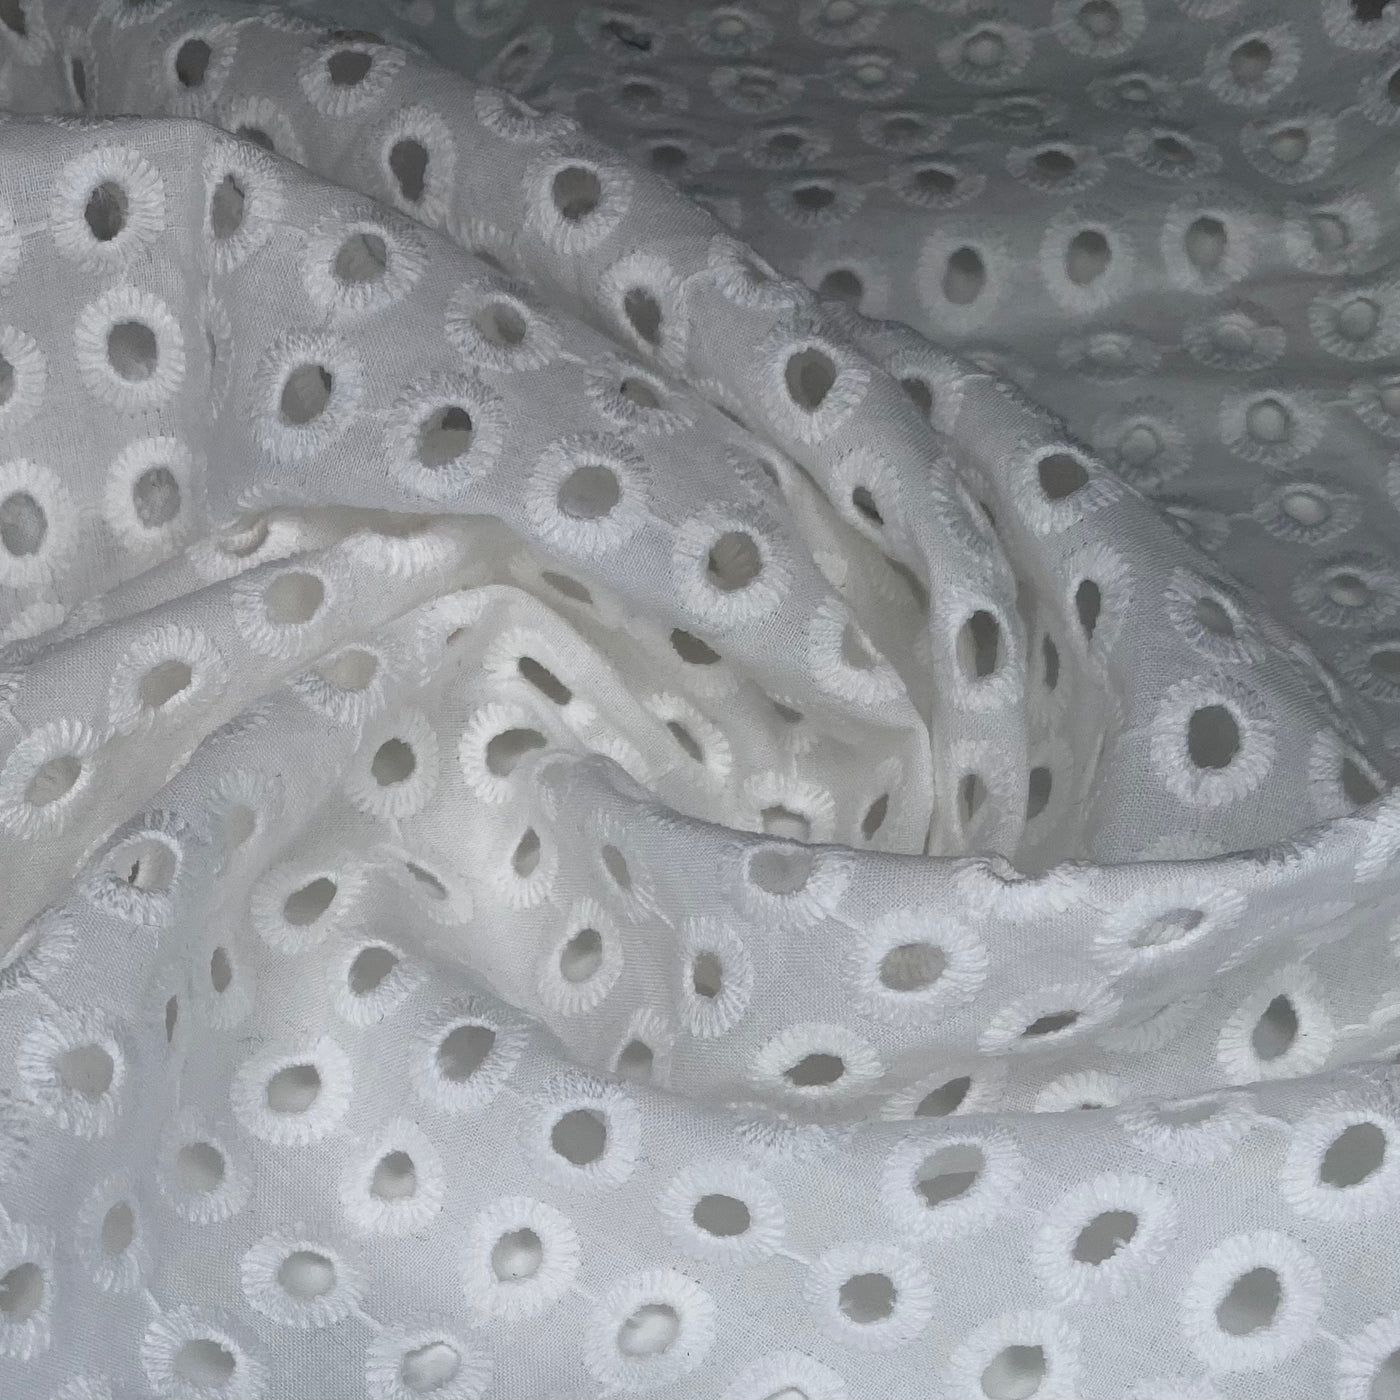 Embroidered Cotton Eyelet - Circles - White